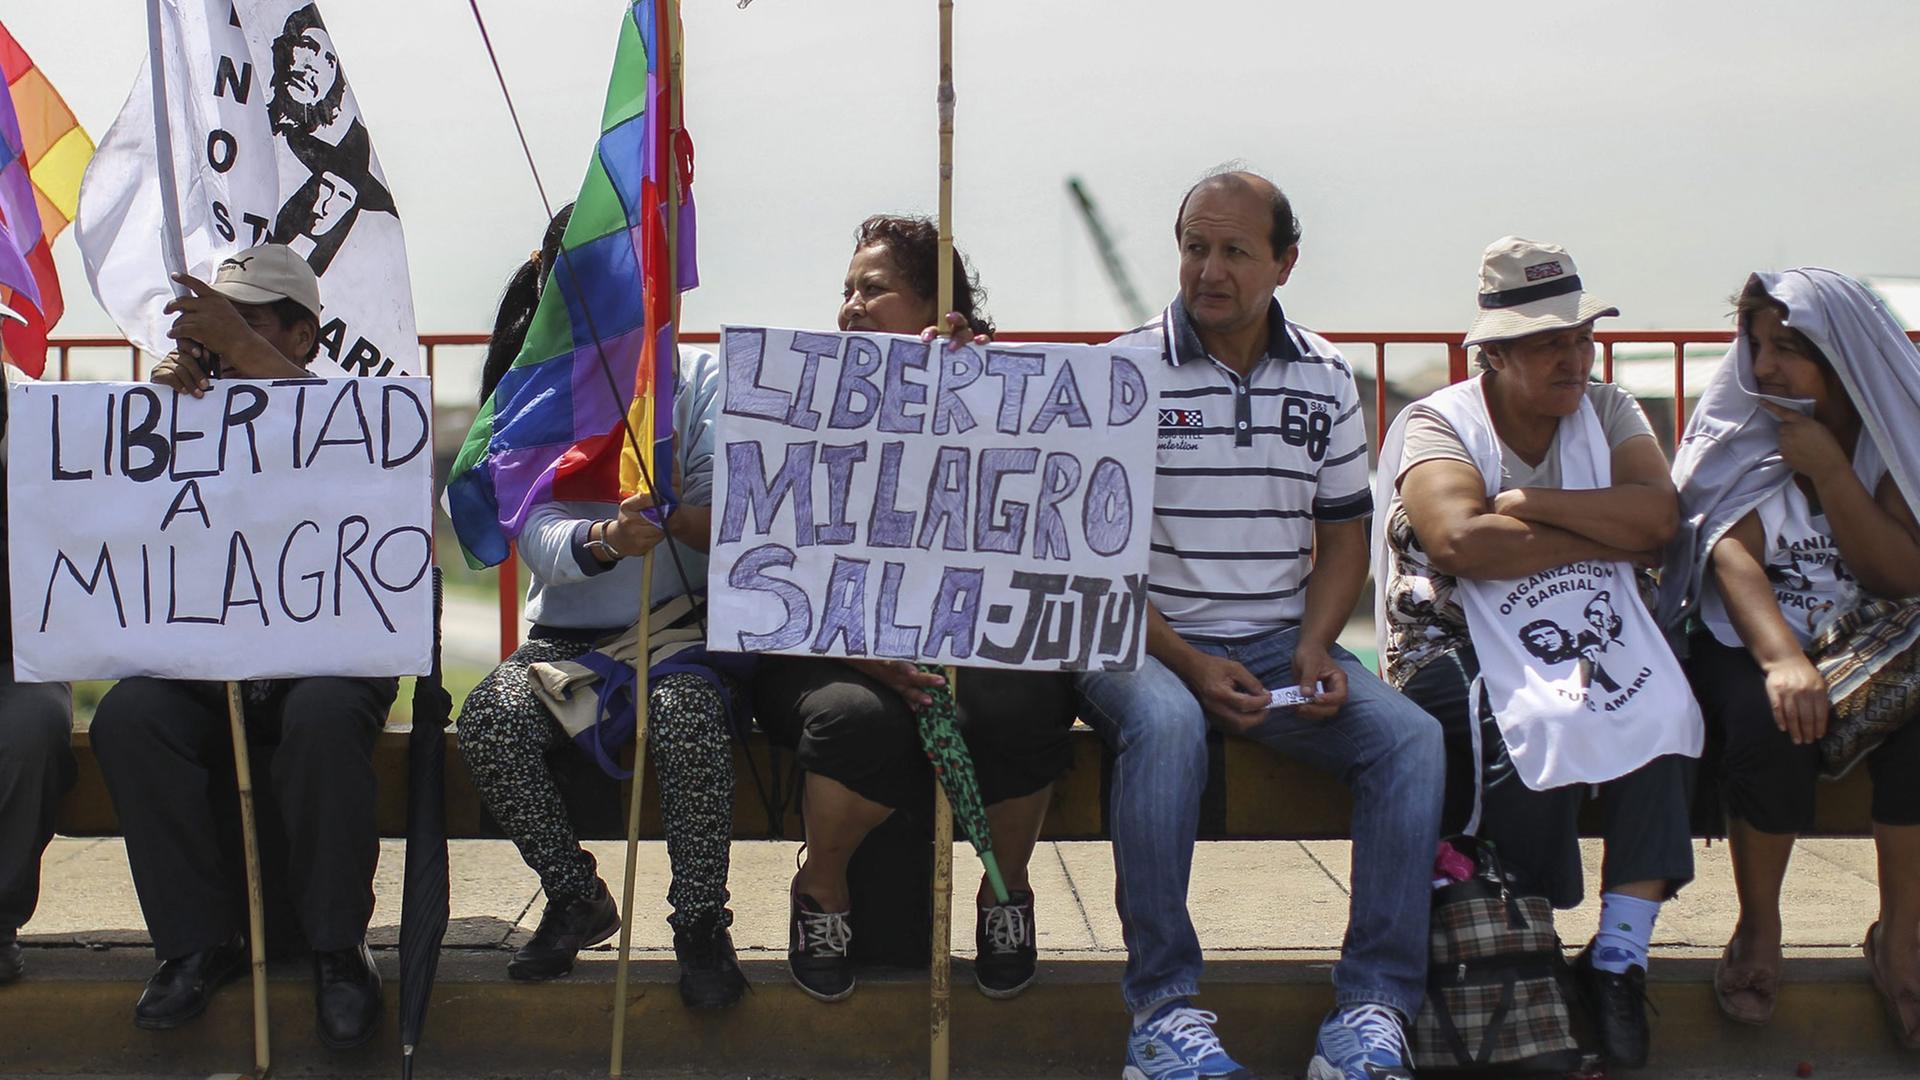 Demonstranten für die Freilassung von Milagro Sala in Buenos Aires, Argentinien.